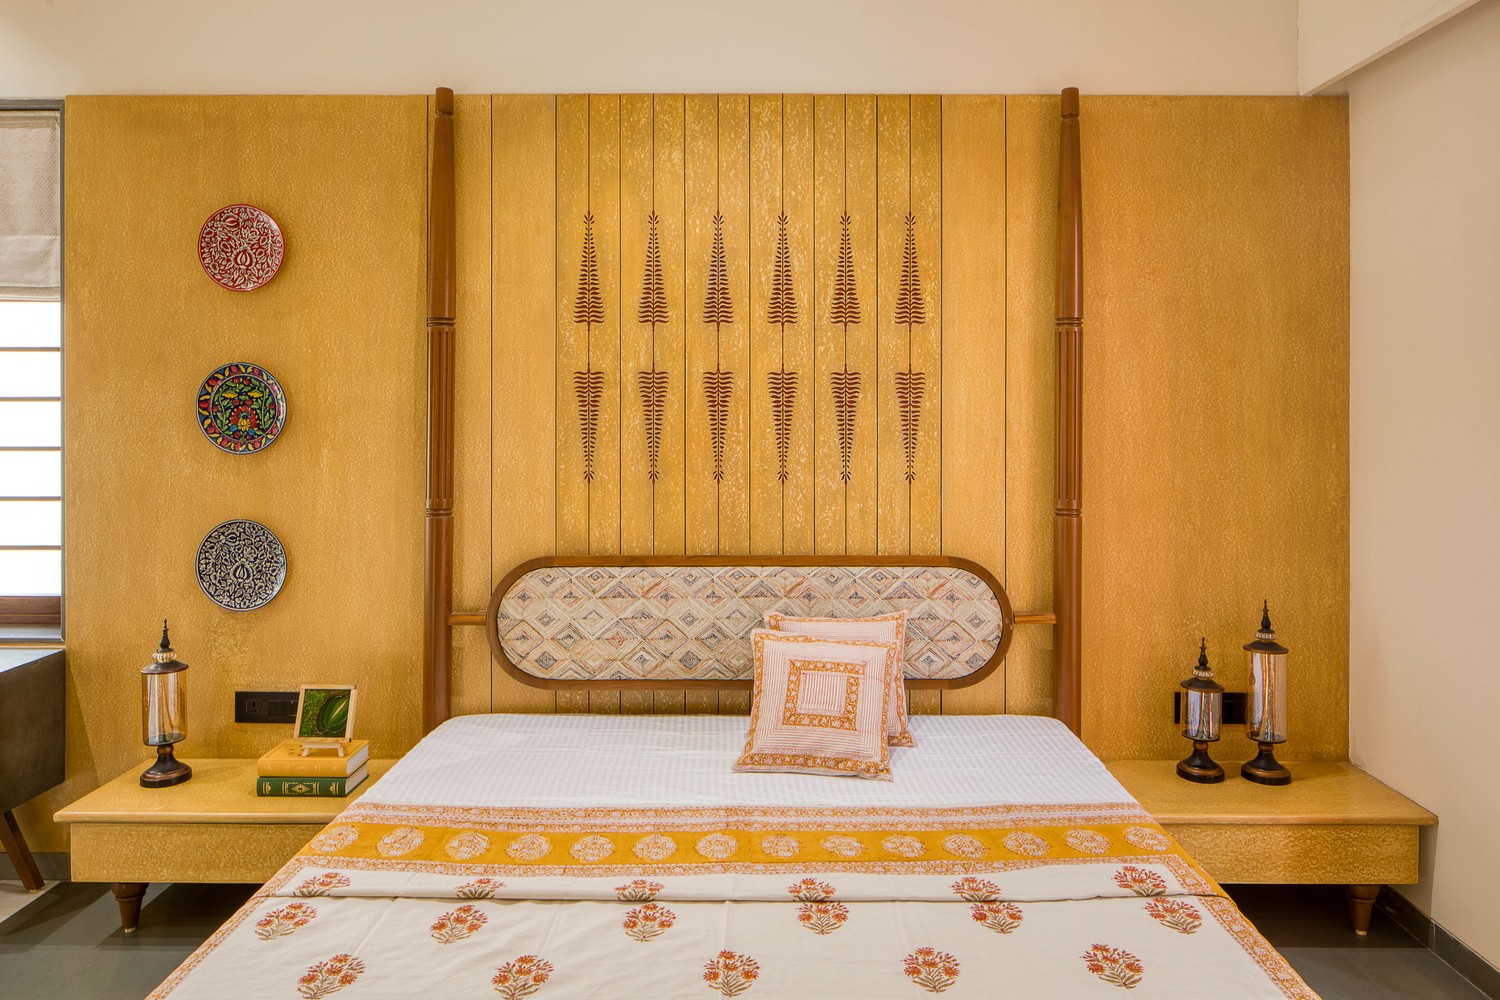 hình ảnh phòng ngủ nổi bật với tường đầu giường màu vàng